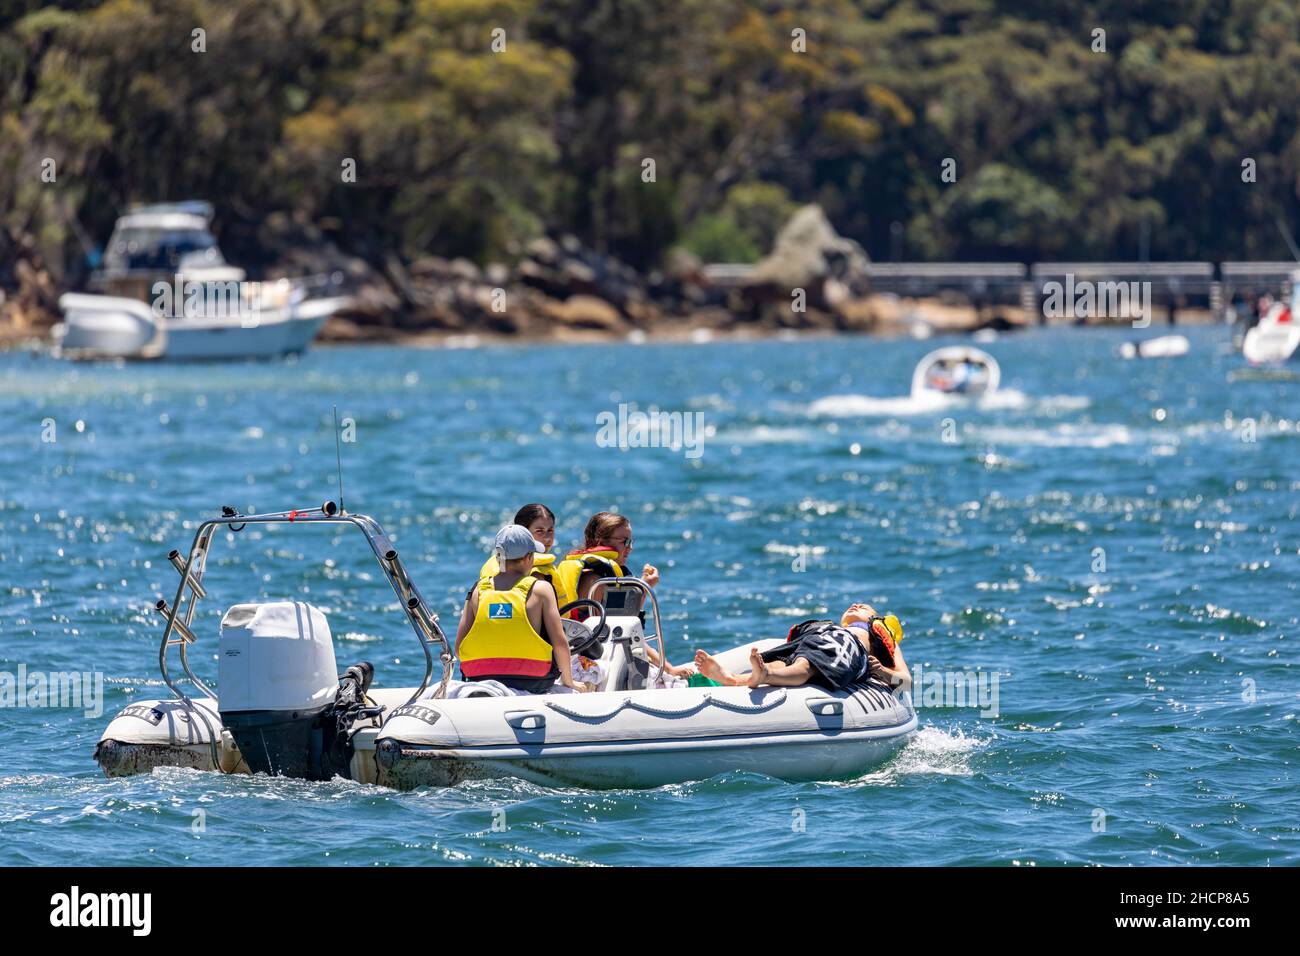 Les jeunes enfants portant un gilet de sauvetage contrôlent et exploitent un canot gonflable pneumatique en caoutchouc à Pittwater, Sydney, Australie Banque D'Images